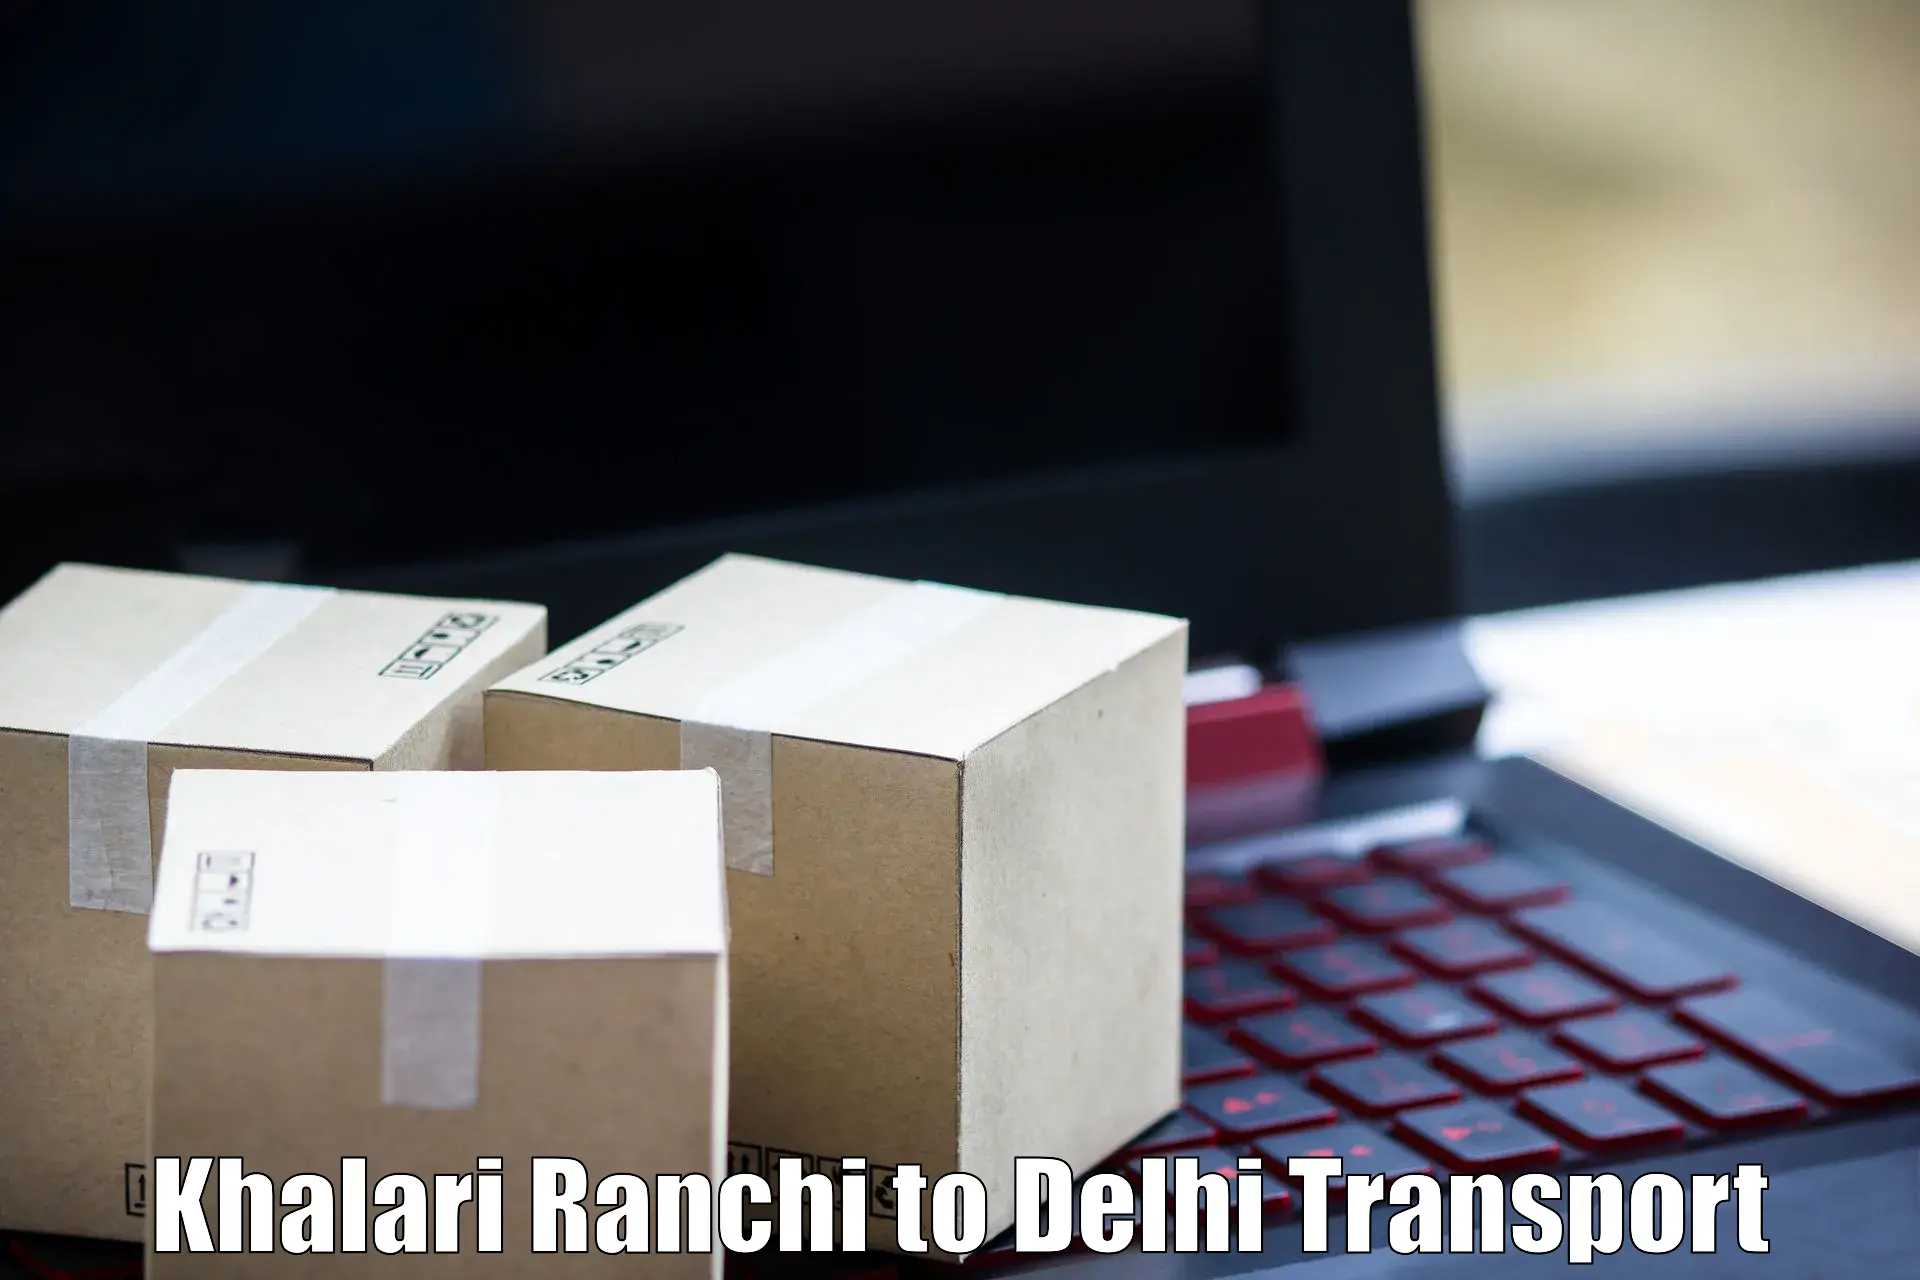 Two wheeler parcel service Khalari Ranchi to Jamia Millia Islamia New Delhi